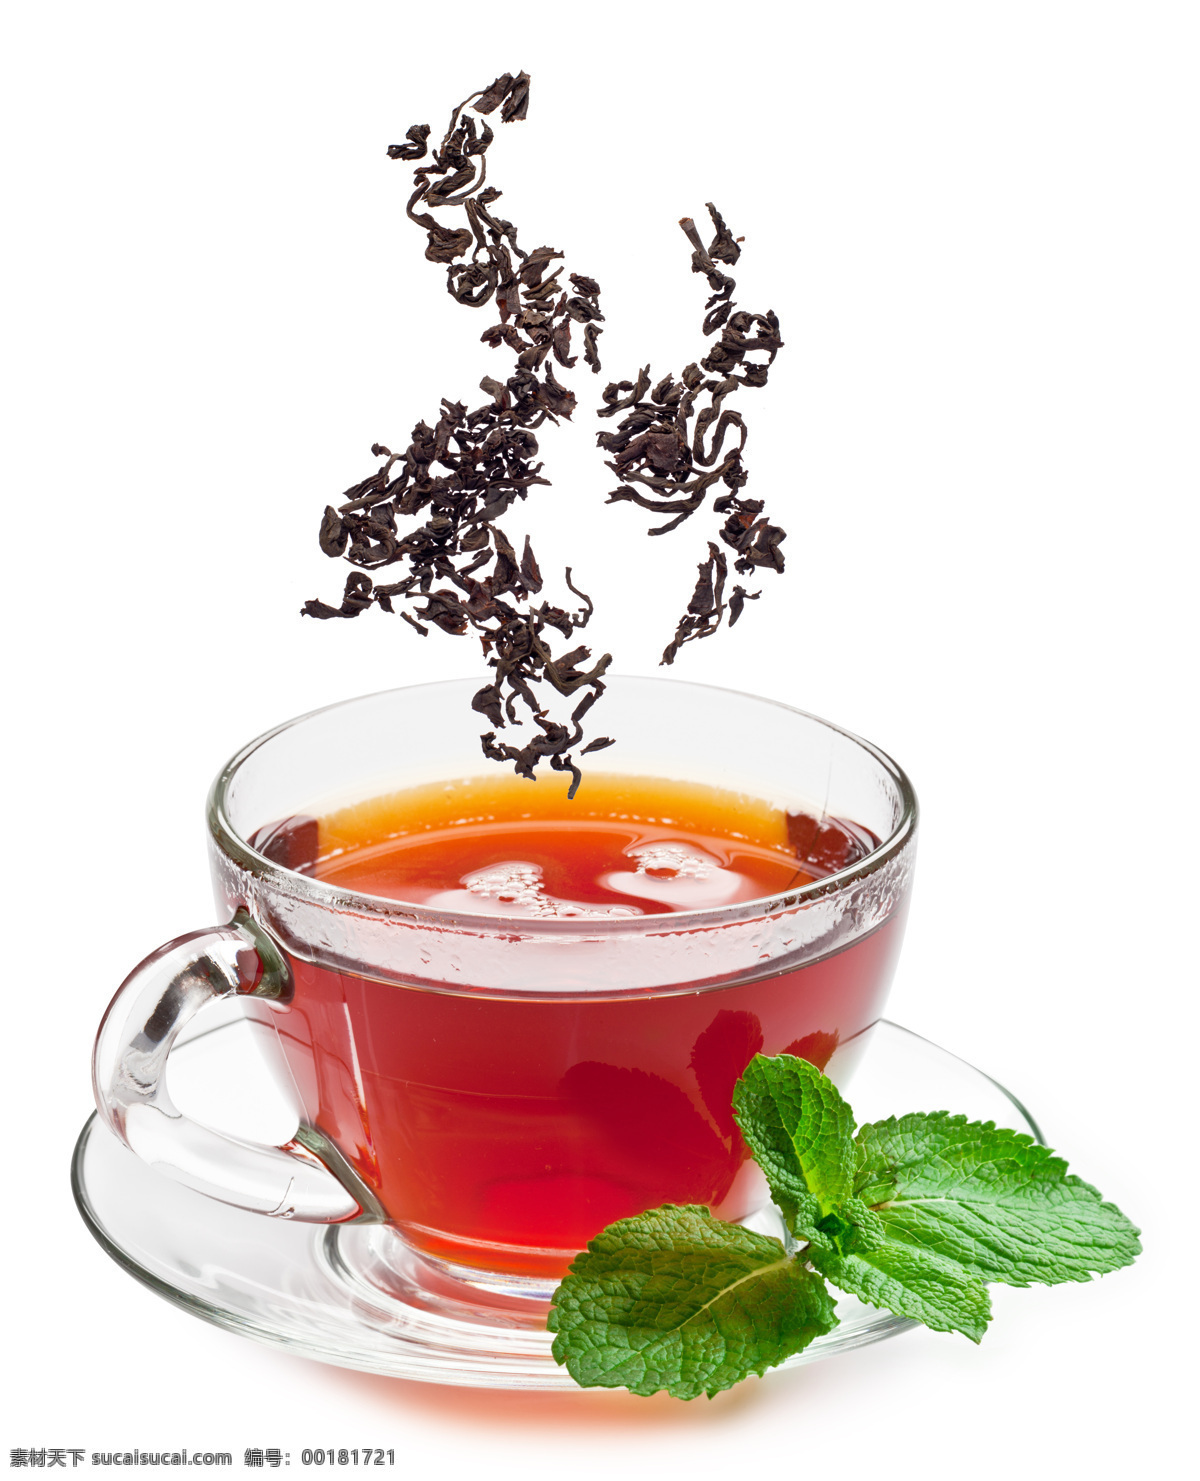 唯美果茶 唯美 饮料 饮品 营养 健康 茶 果茶 养生 鲜果 新鲜 餐饮美食 饮料酒水